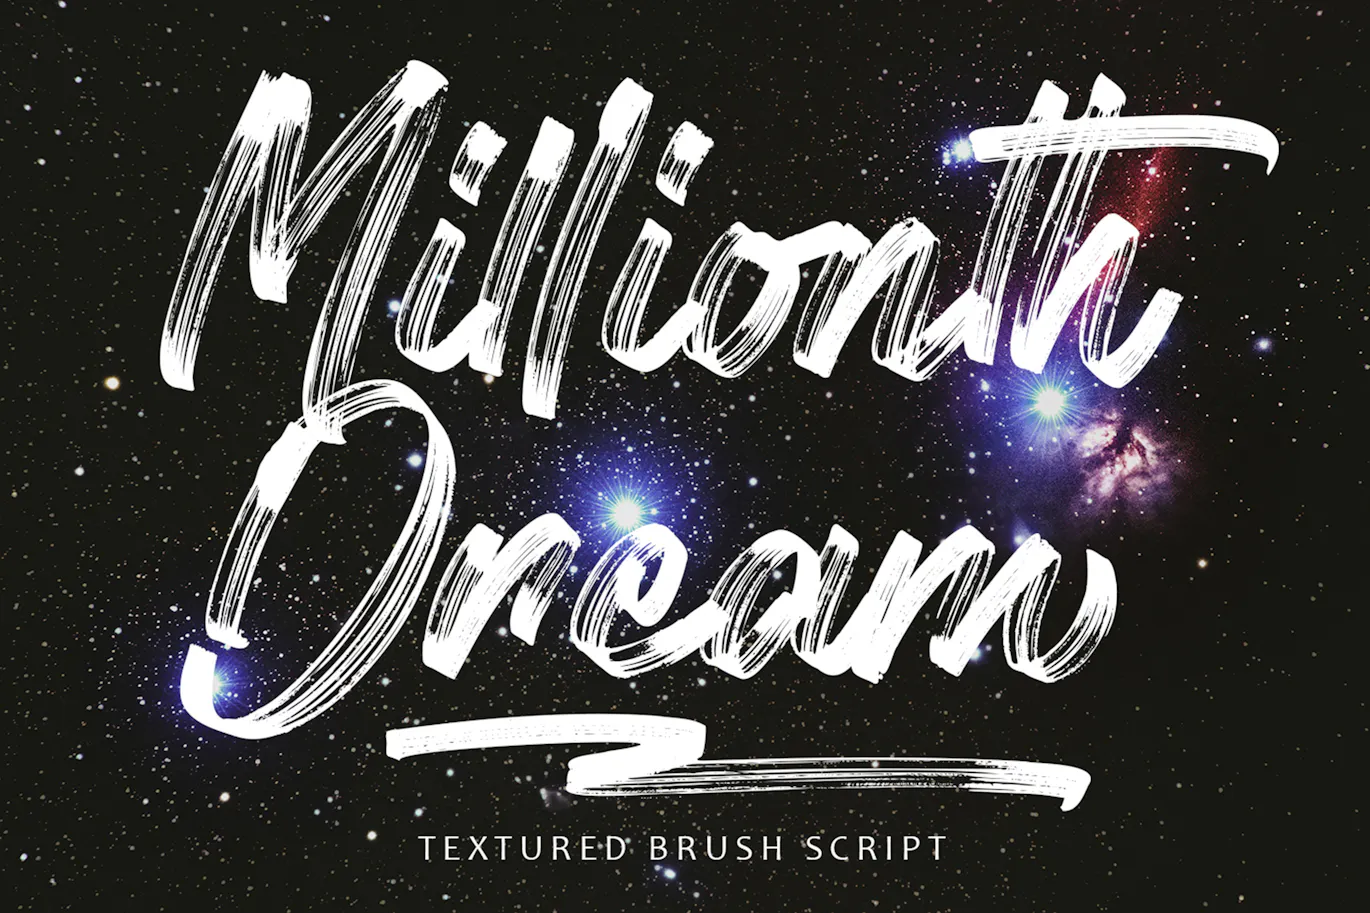 笔刷效果英文手写装饰字体 - Millionth Dream 设计字体 第8张